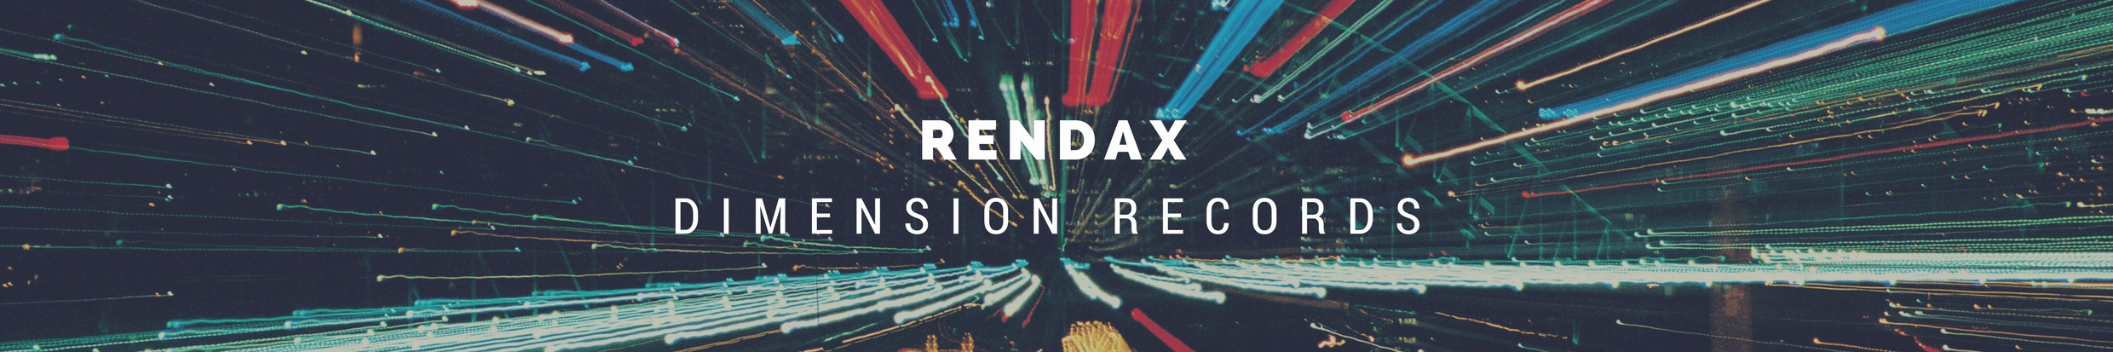 Rendax